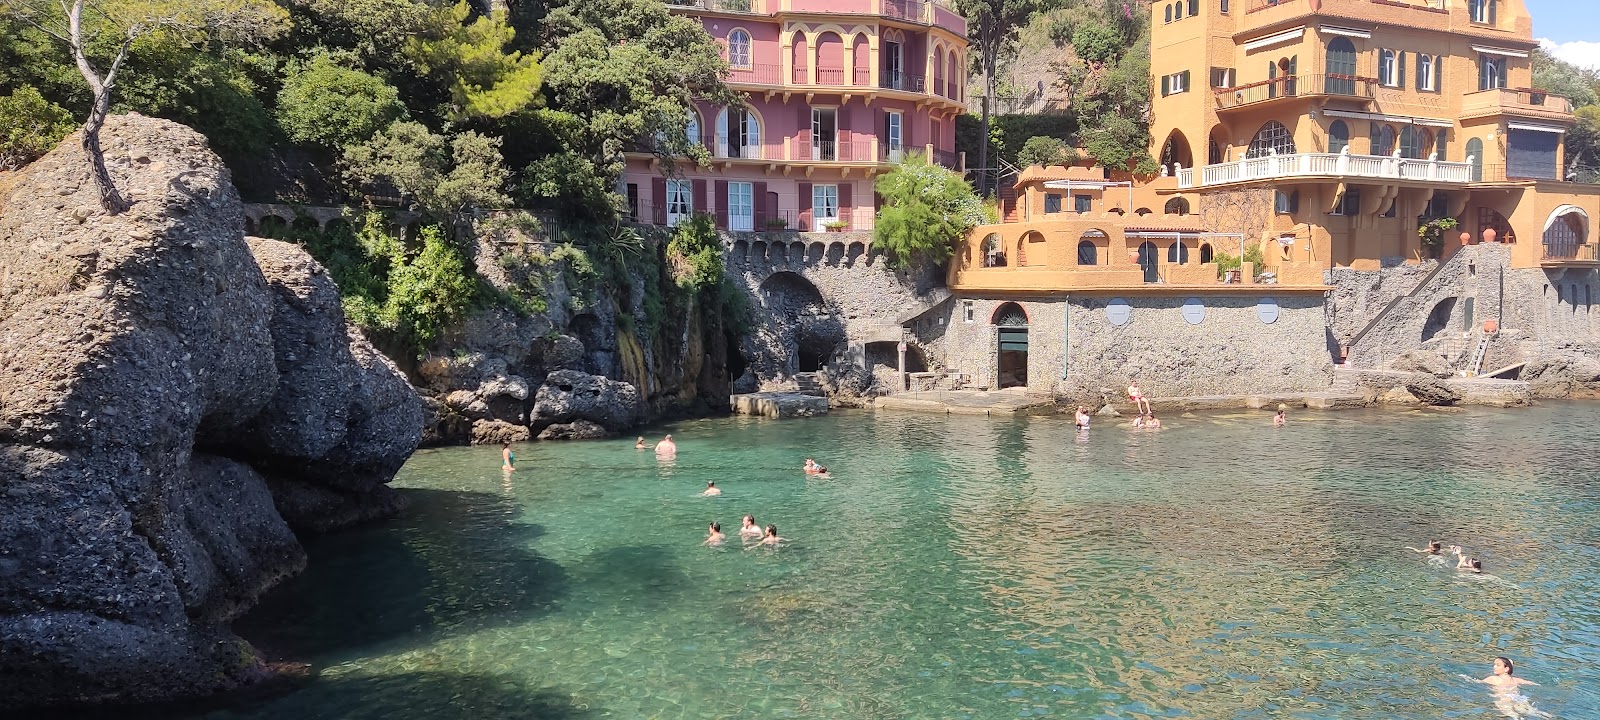 Baia Cannone Portofino的照片 带有微海湾